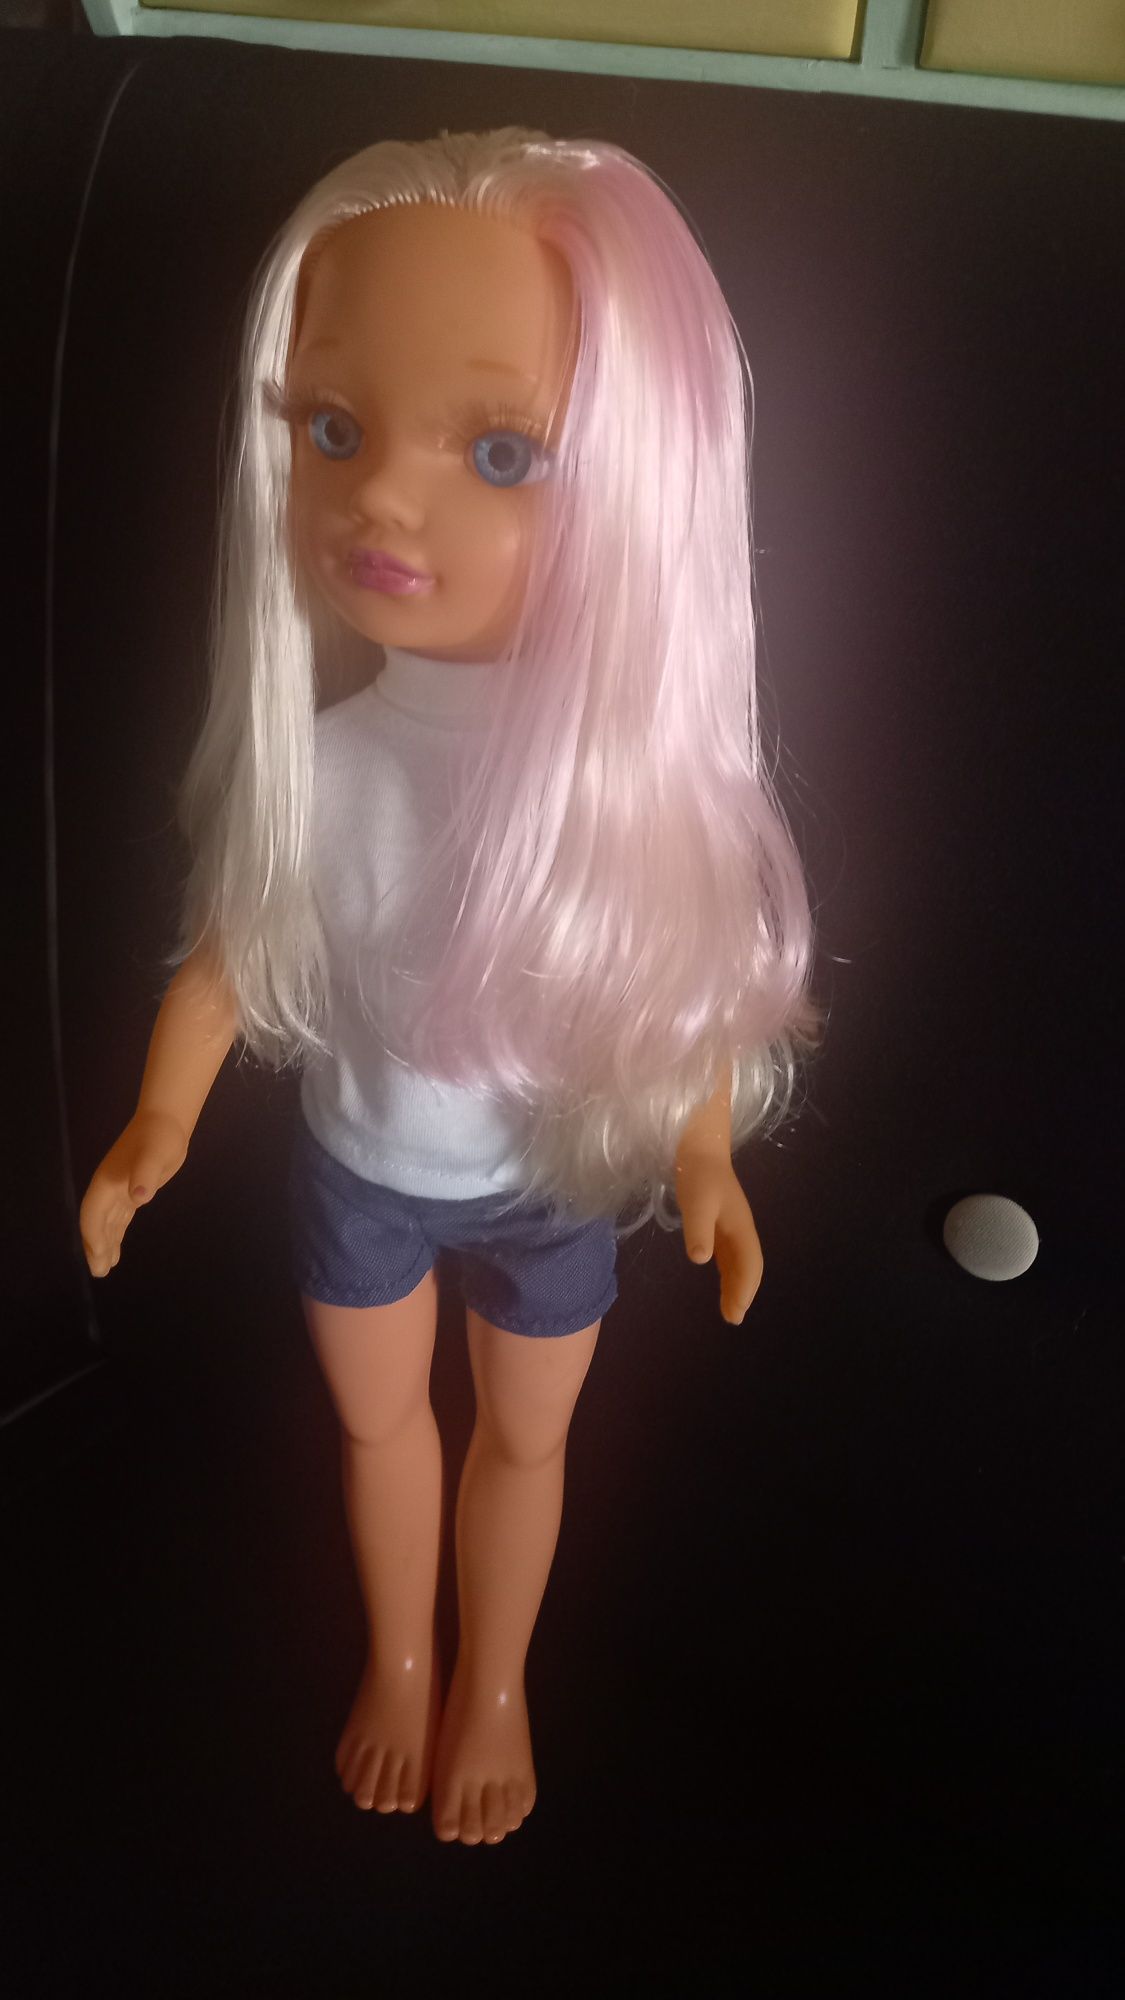 Boneca Nancy Famosa de 2013.
42 cm
Limpa e cuidada.
Portes não inclu